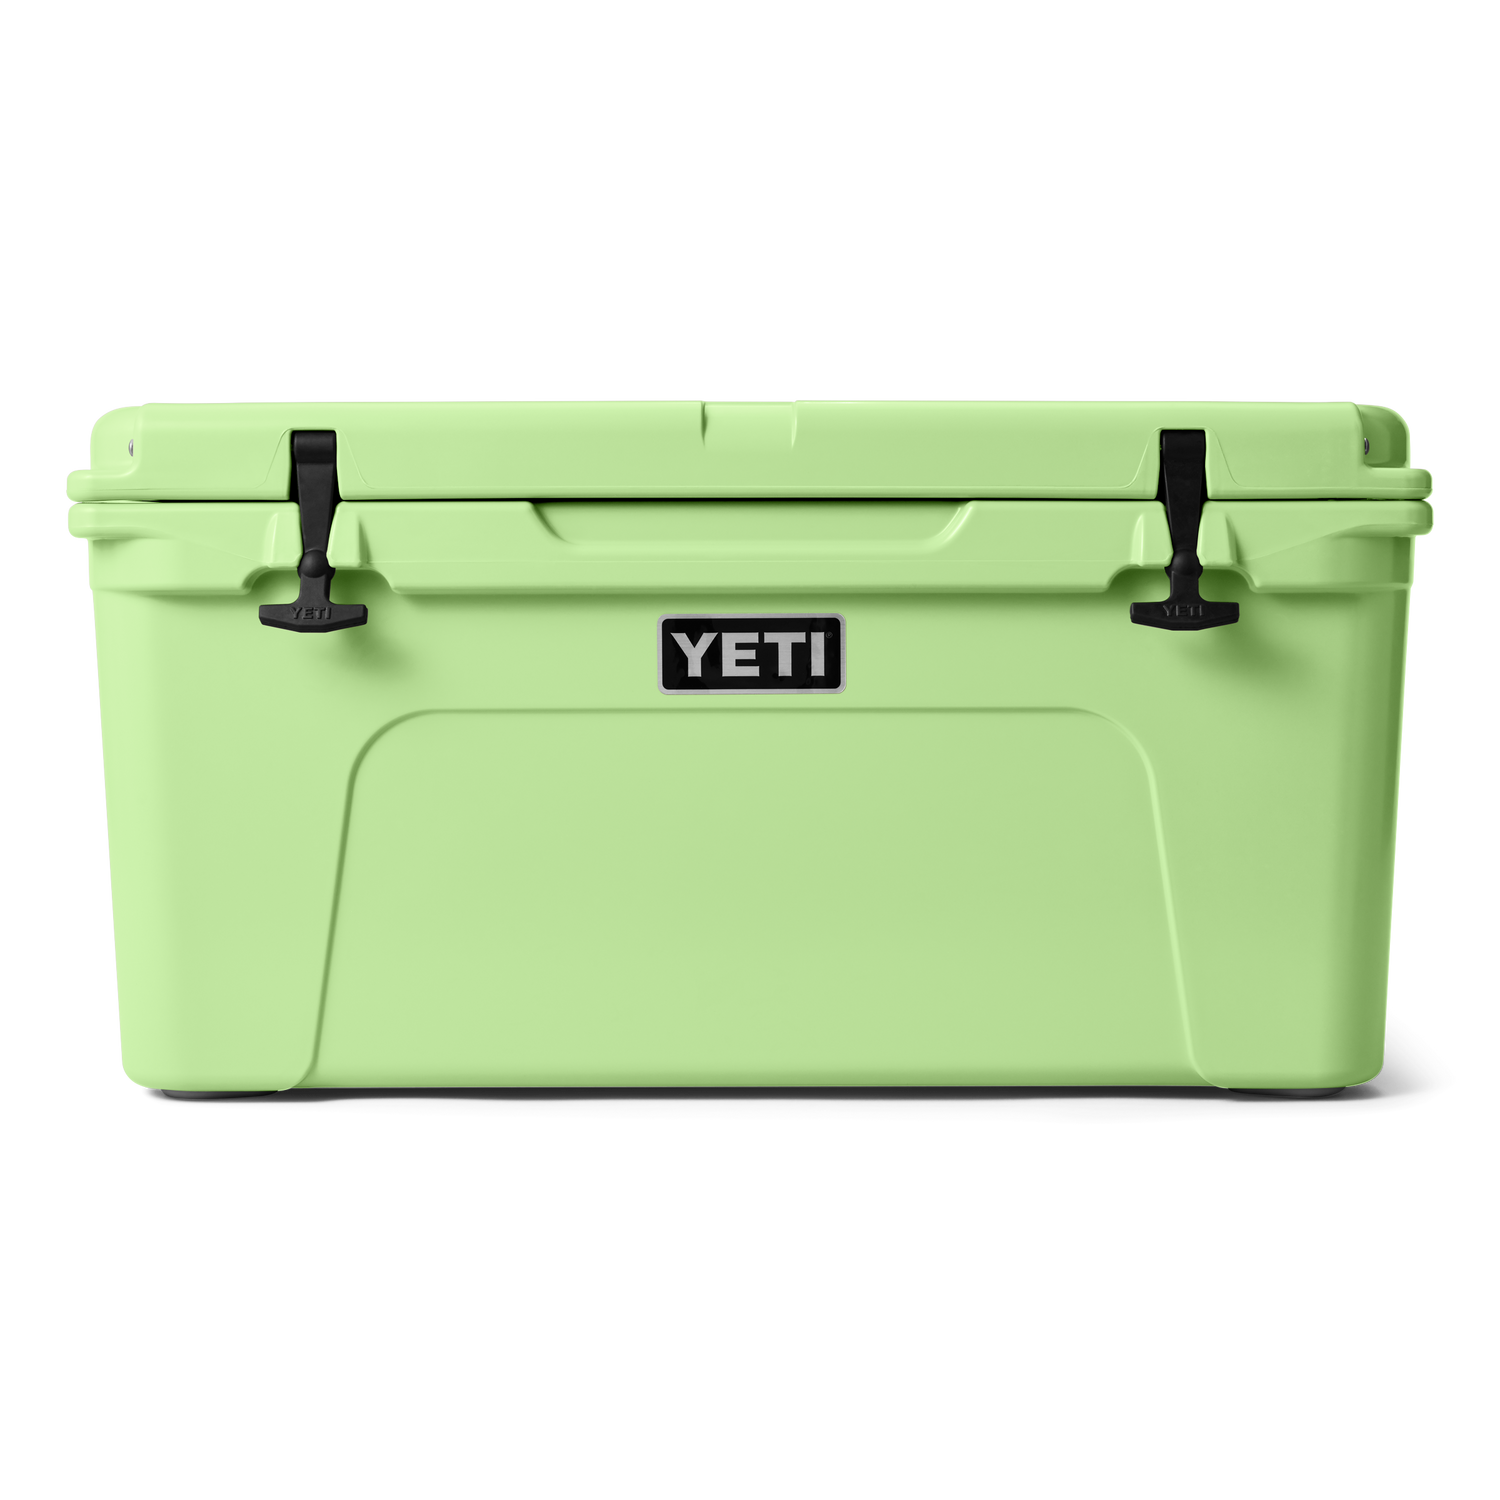 YETI Tundra® 65 Cool Box